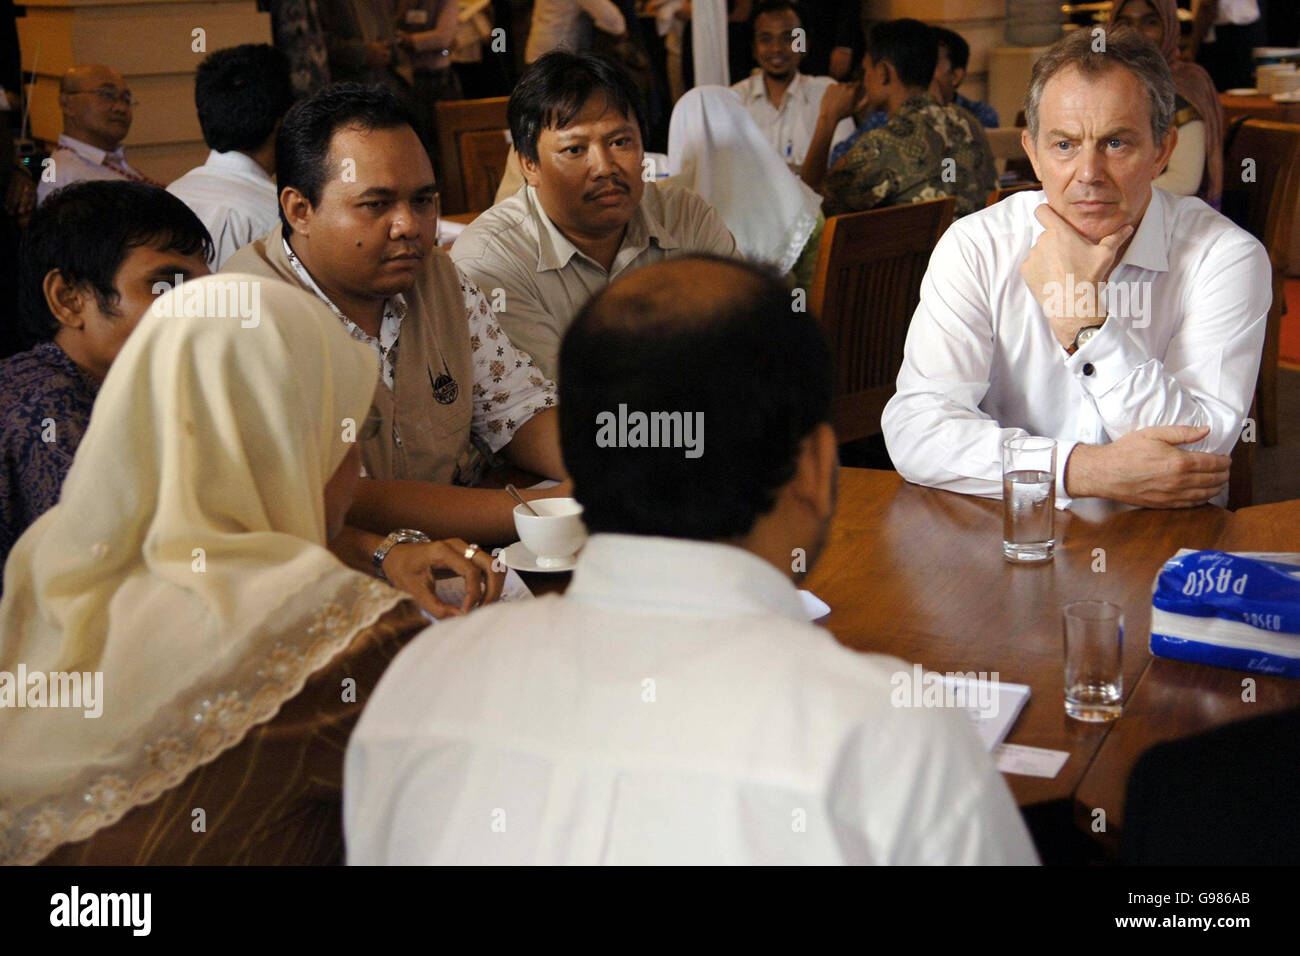 Der britische Premierminister Tony Blair trifft am Donnerstag, den 30. März 2006, in der indonesischen Provinz Aceh die Witwen der Tsunami-Katastrophe und des Bürgerkrieges. Blair hat heute zugesagt, bei der Bekämpfung des Terrorismus enger mit dem größten muslimischen Land der Welt zusammenzuarbeiten, aber die muslimischen Führer Indonesiens sagten ihm, dass seine Politik Extremismus gezüchte. Herr Blair, begleitet von seiner Frau Cherie, ist gestern Abend in der Hauptstadt Jakarta auf der letzten Etappe einer siebentägigen diplomatischen Marathonmission niedergegangen. Siehe PA Geschichte POLITIK Blair. DRÜCKEN SIE VERBANDSFOTO. Bildnachweis sollte lauten: Stefan Rousseau/PA. Stockfoto